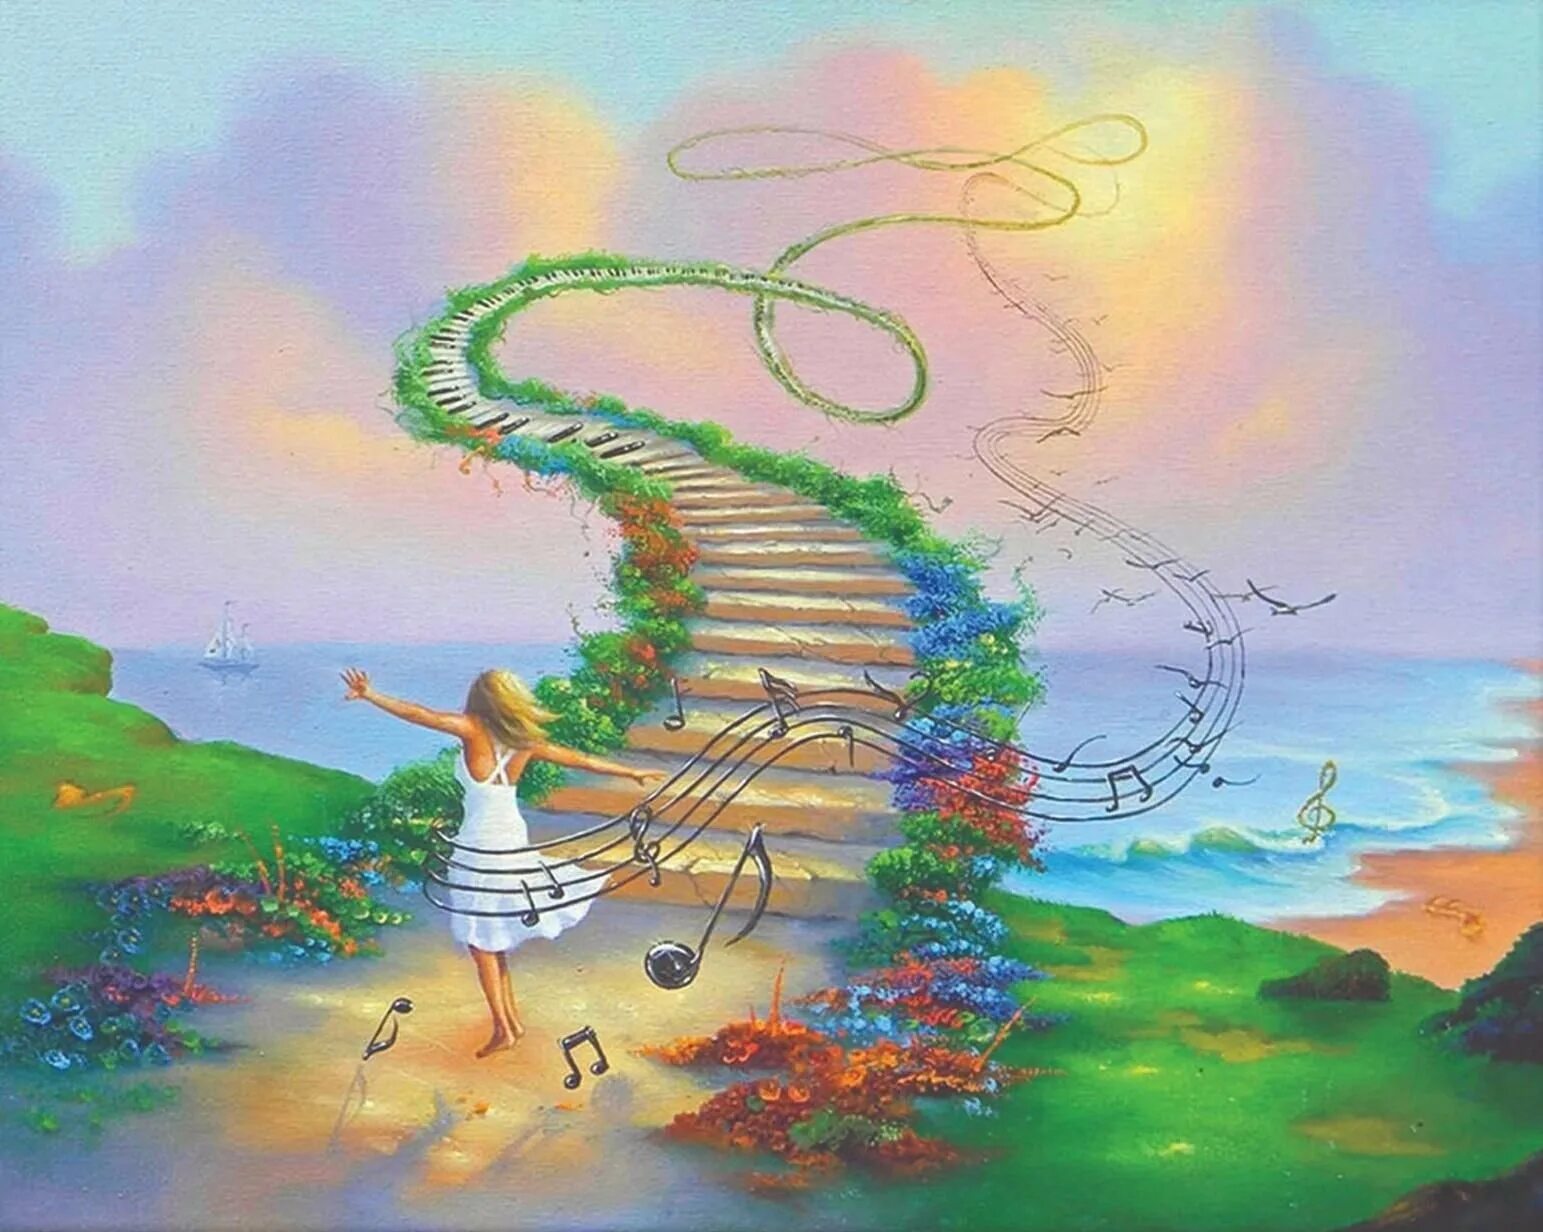 Джим Уоррен (Jim Warren) (р.1949). Лестница в небо Джим Уоррен. Мечта рисунок. Фантазийные рисунки. Мечтать это прекрасно